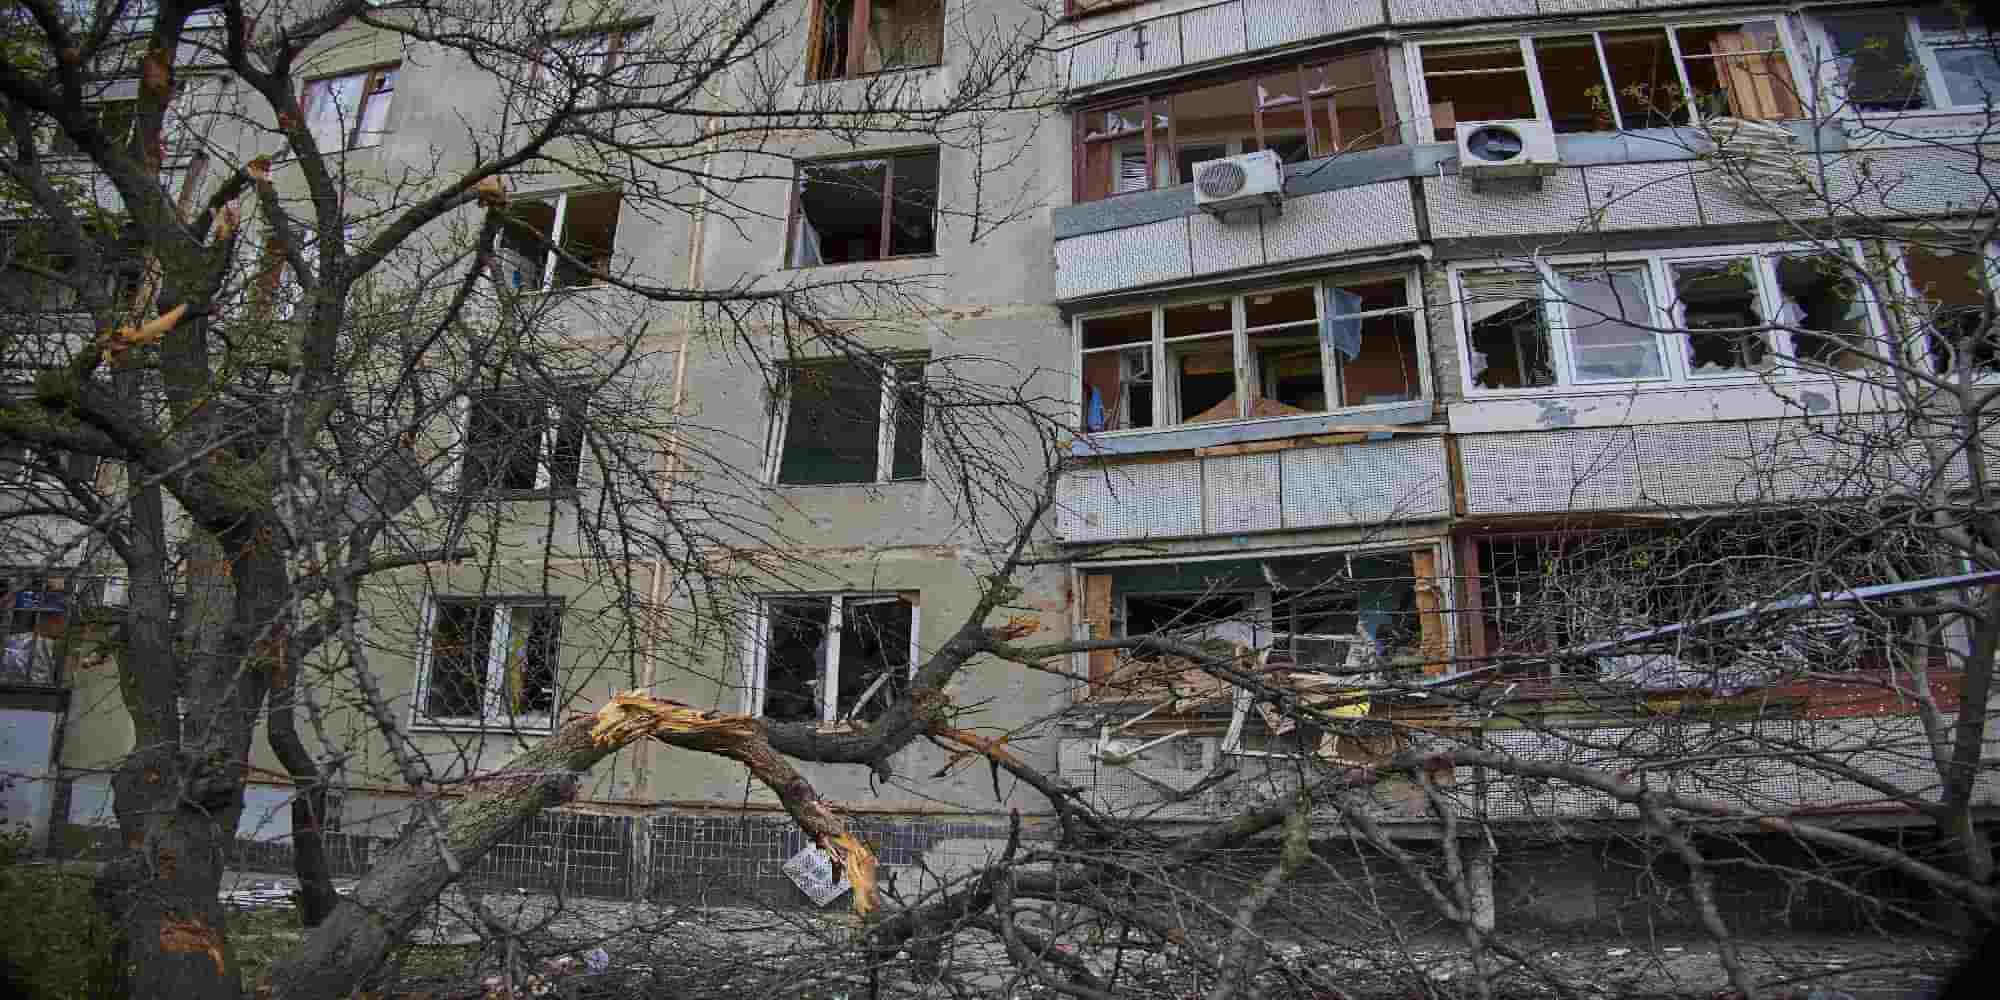 Ζημιές σε κτίρια μετά από βομβαρδισμούς στην Χάρκοβο στην Ουκρανία